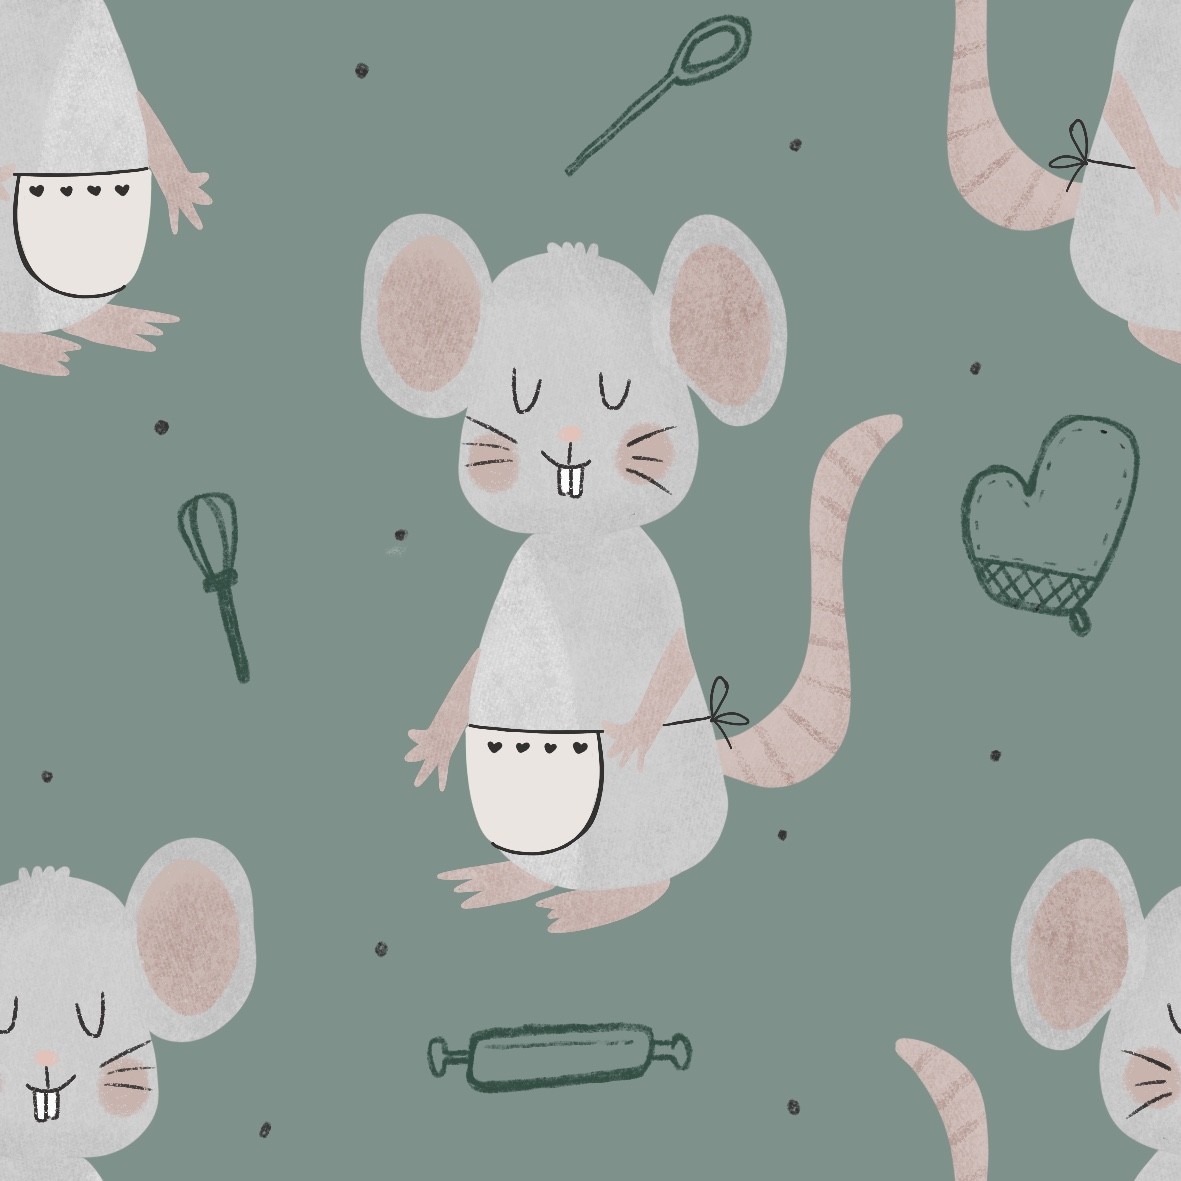 little mouse